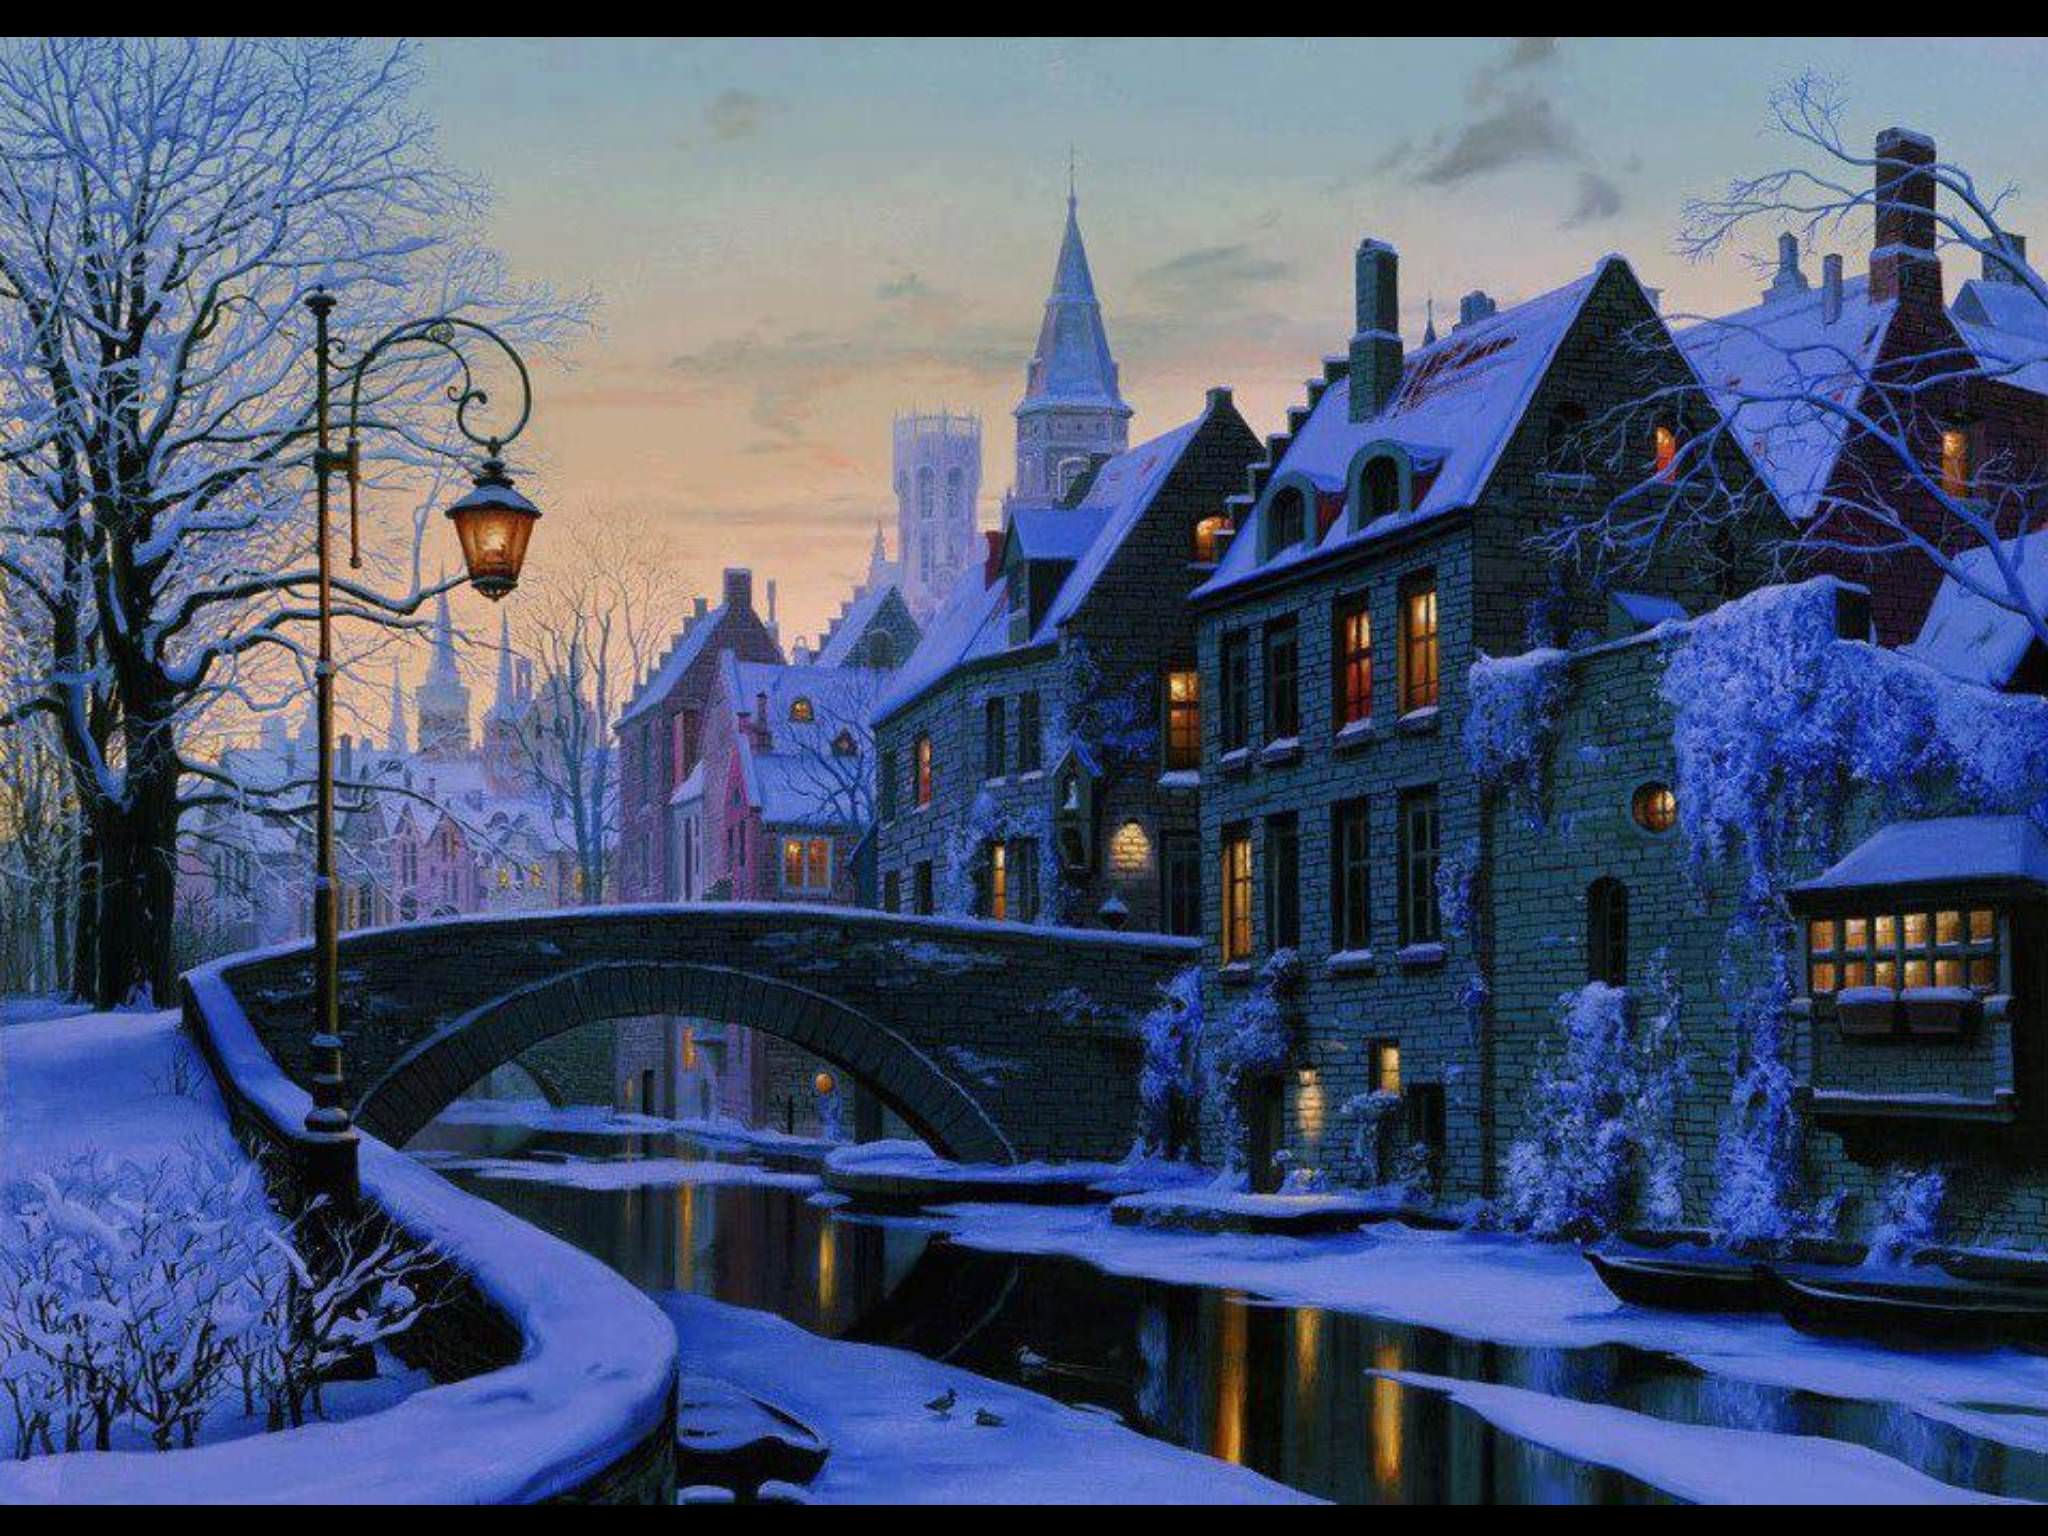 A cozy winter town scene :)